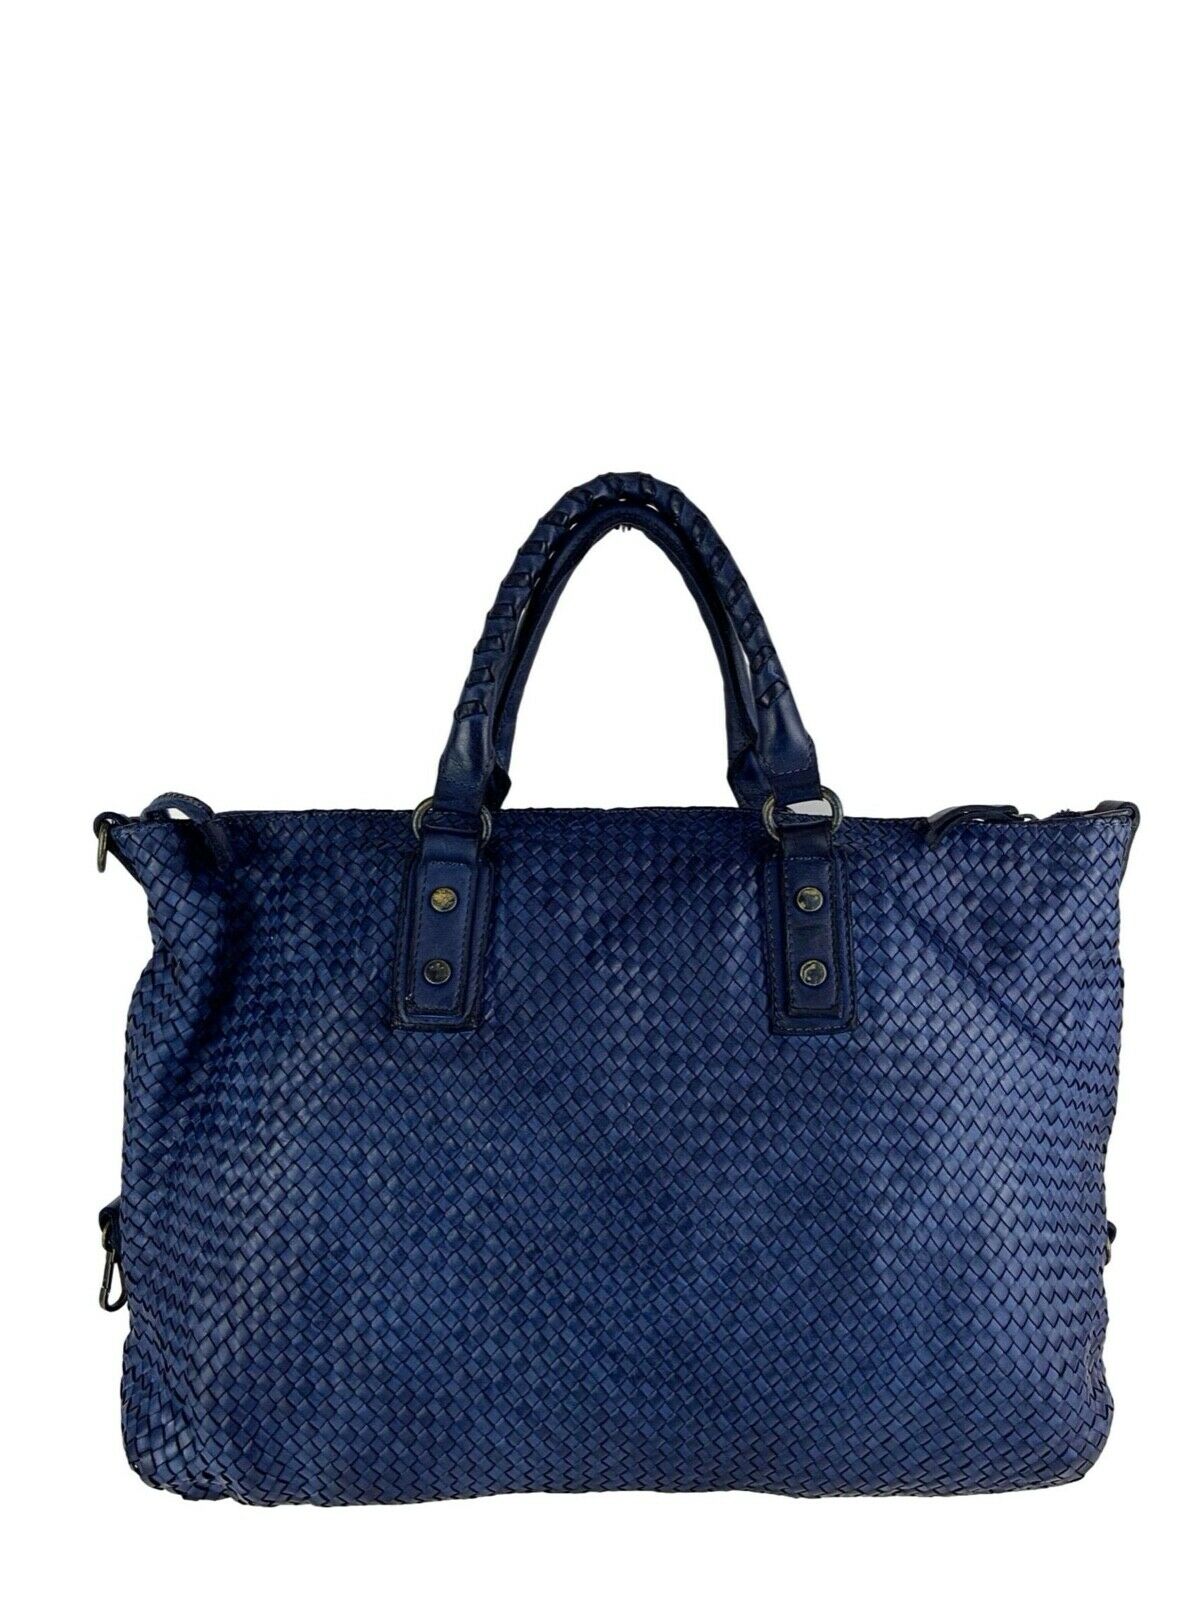 BZNA Bag Olivia Blau Shopper Tasche Schultertasche Handtasche Designer Leder